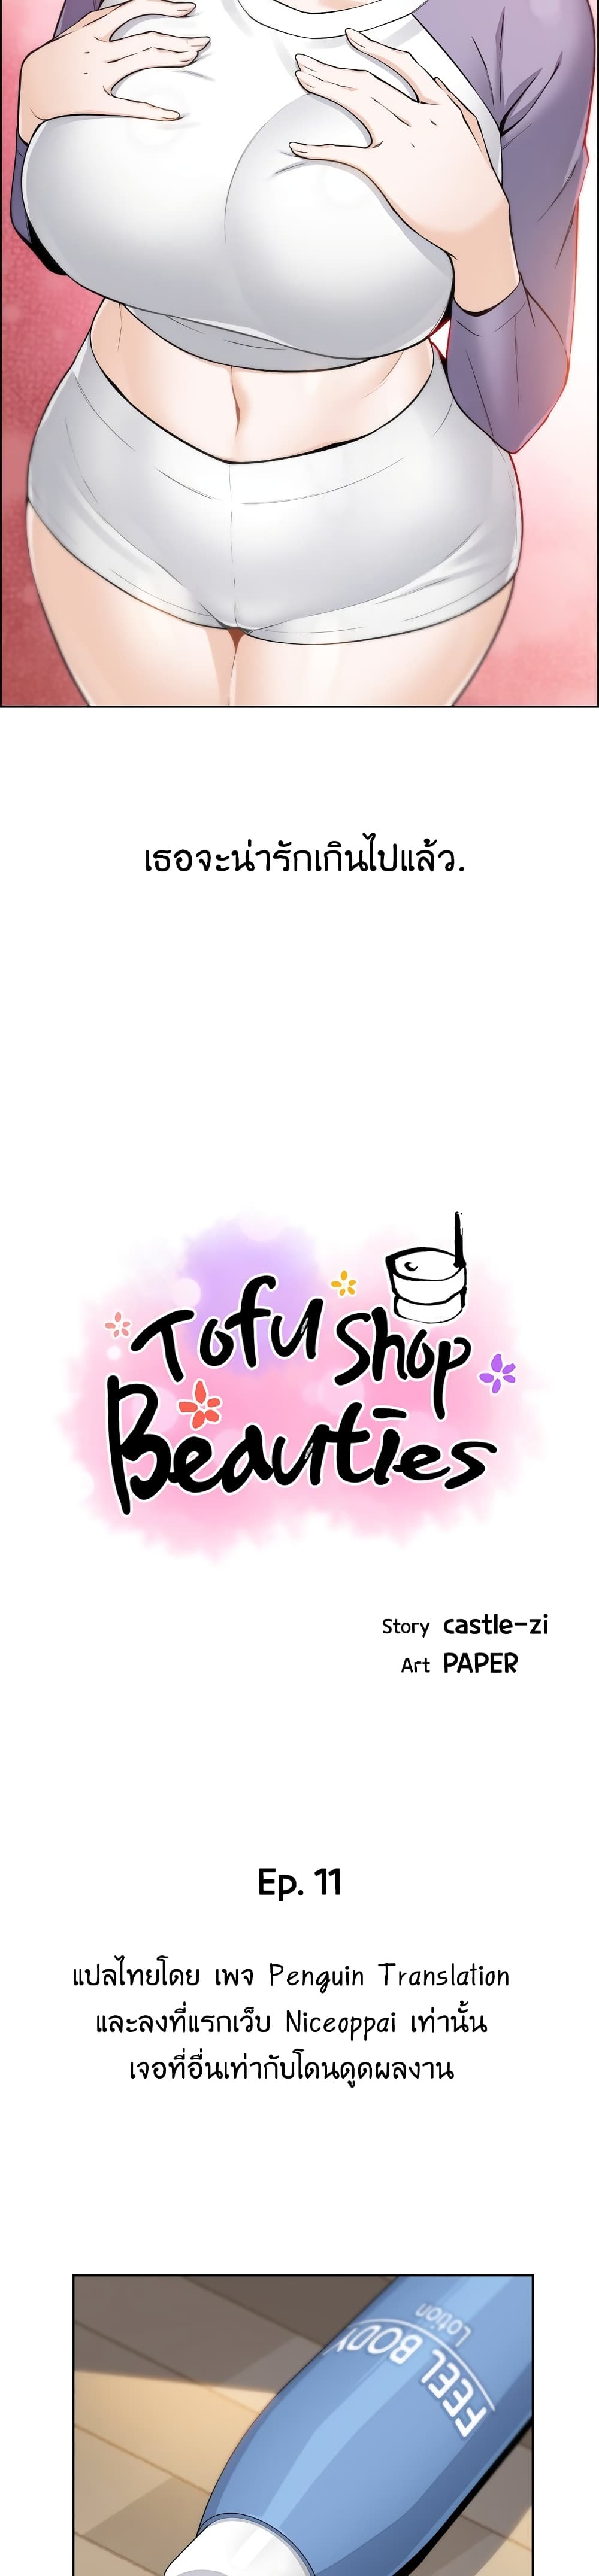 Tofu Shop Beauties 11 (12)